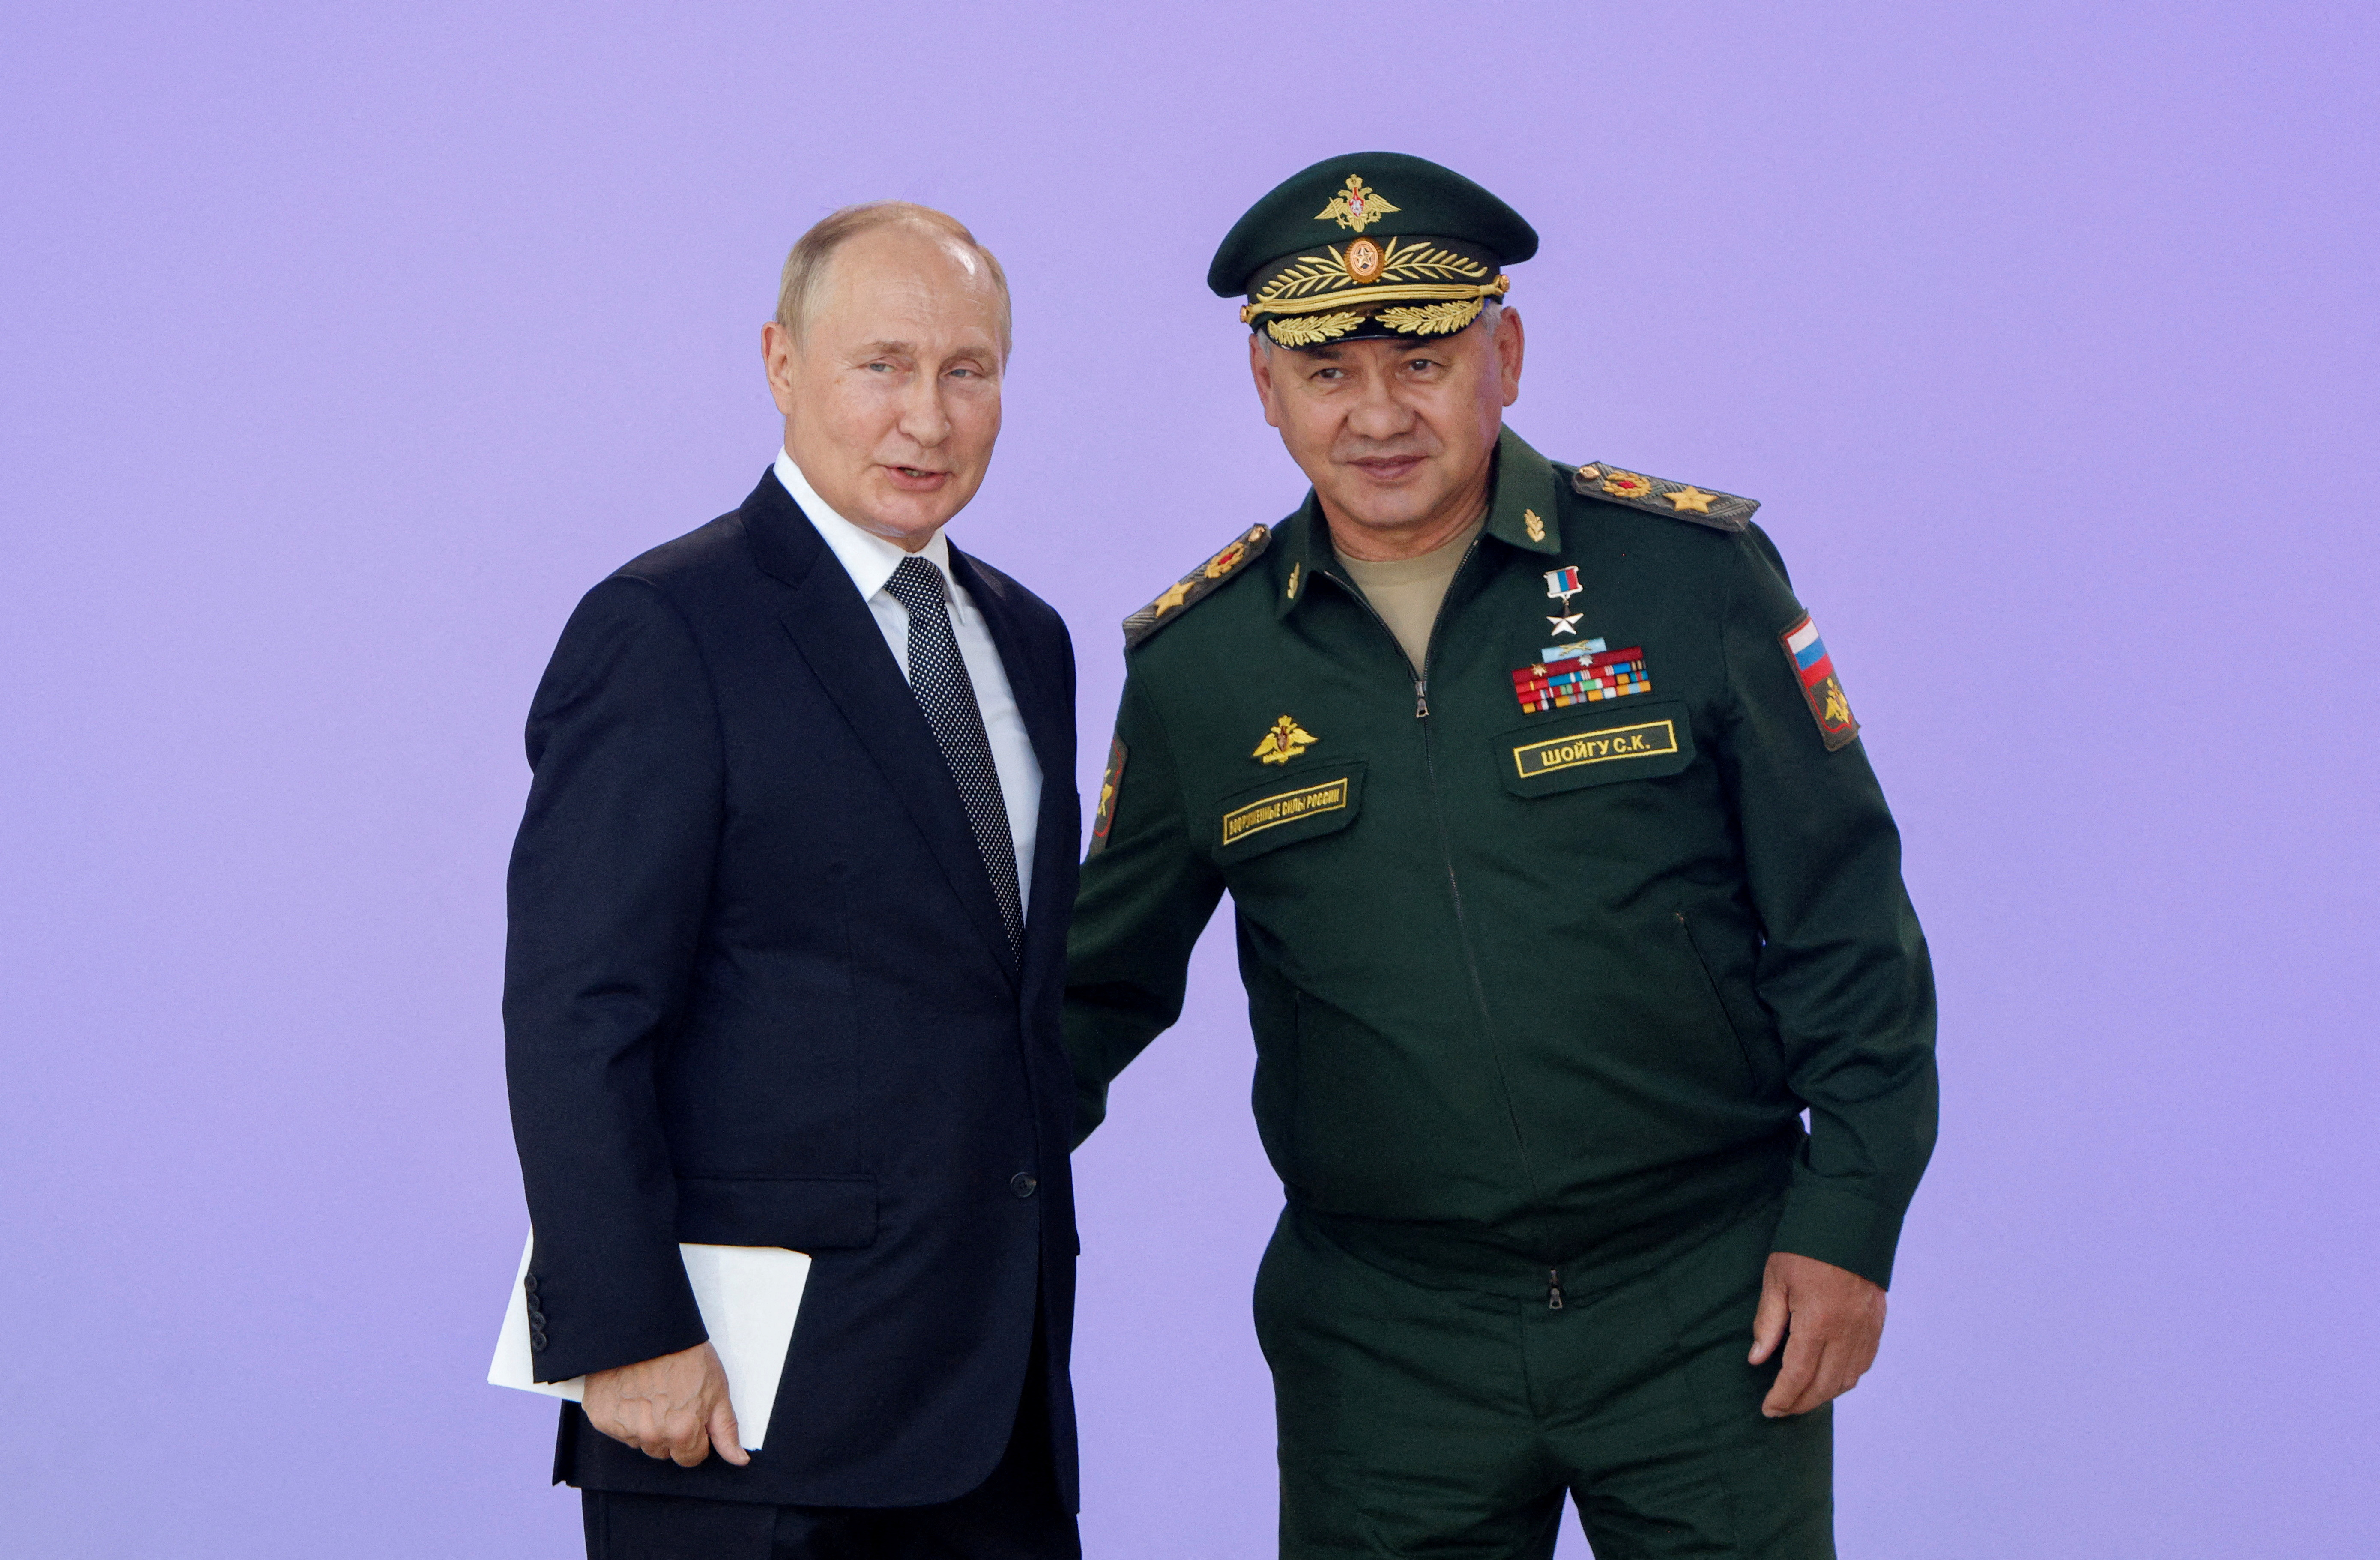 El jefe de estado ruso Vladimir Putin con su cuestionado ministro de Defensa, Sergei Shoigu el 15 de agosto pasado (Reuters)